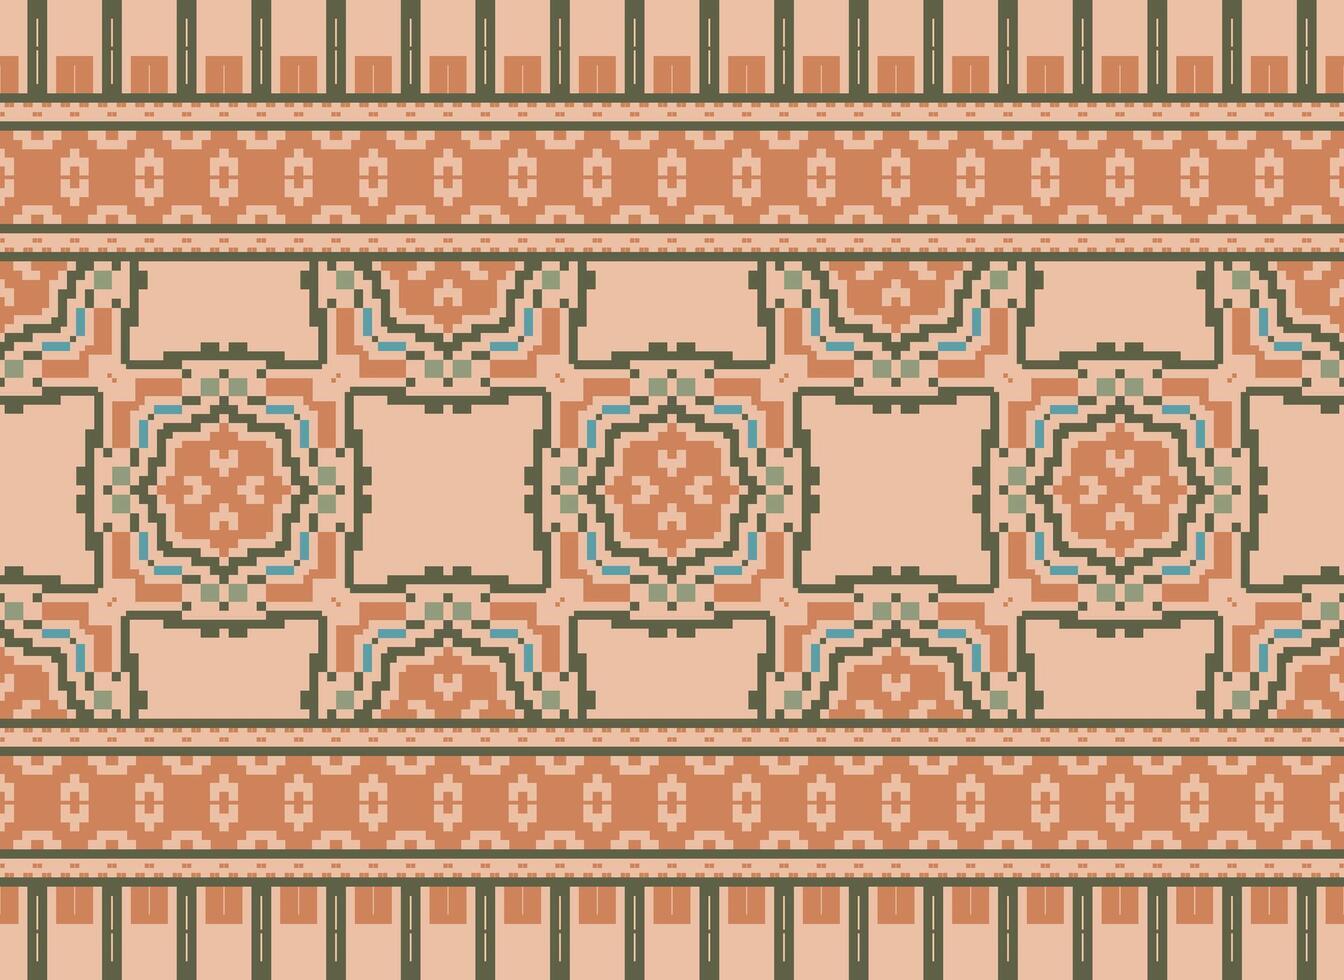 pixel millésimes traverser point traditionnel ethnique modèle paisley fleur ikat Contexte abstrait aztèque africain indonésien Indien sans couture modèle pour en tissu impression tissu robe tapis rideaux et sarong vecteur